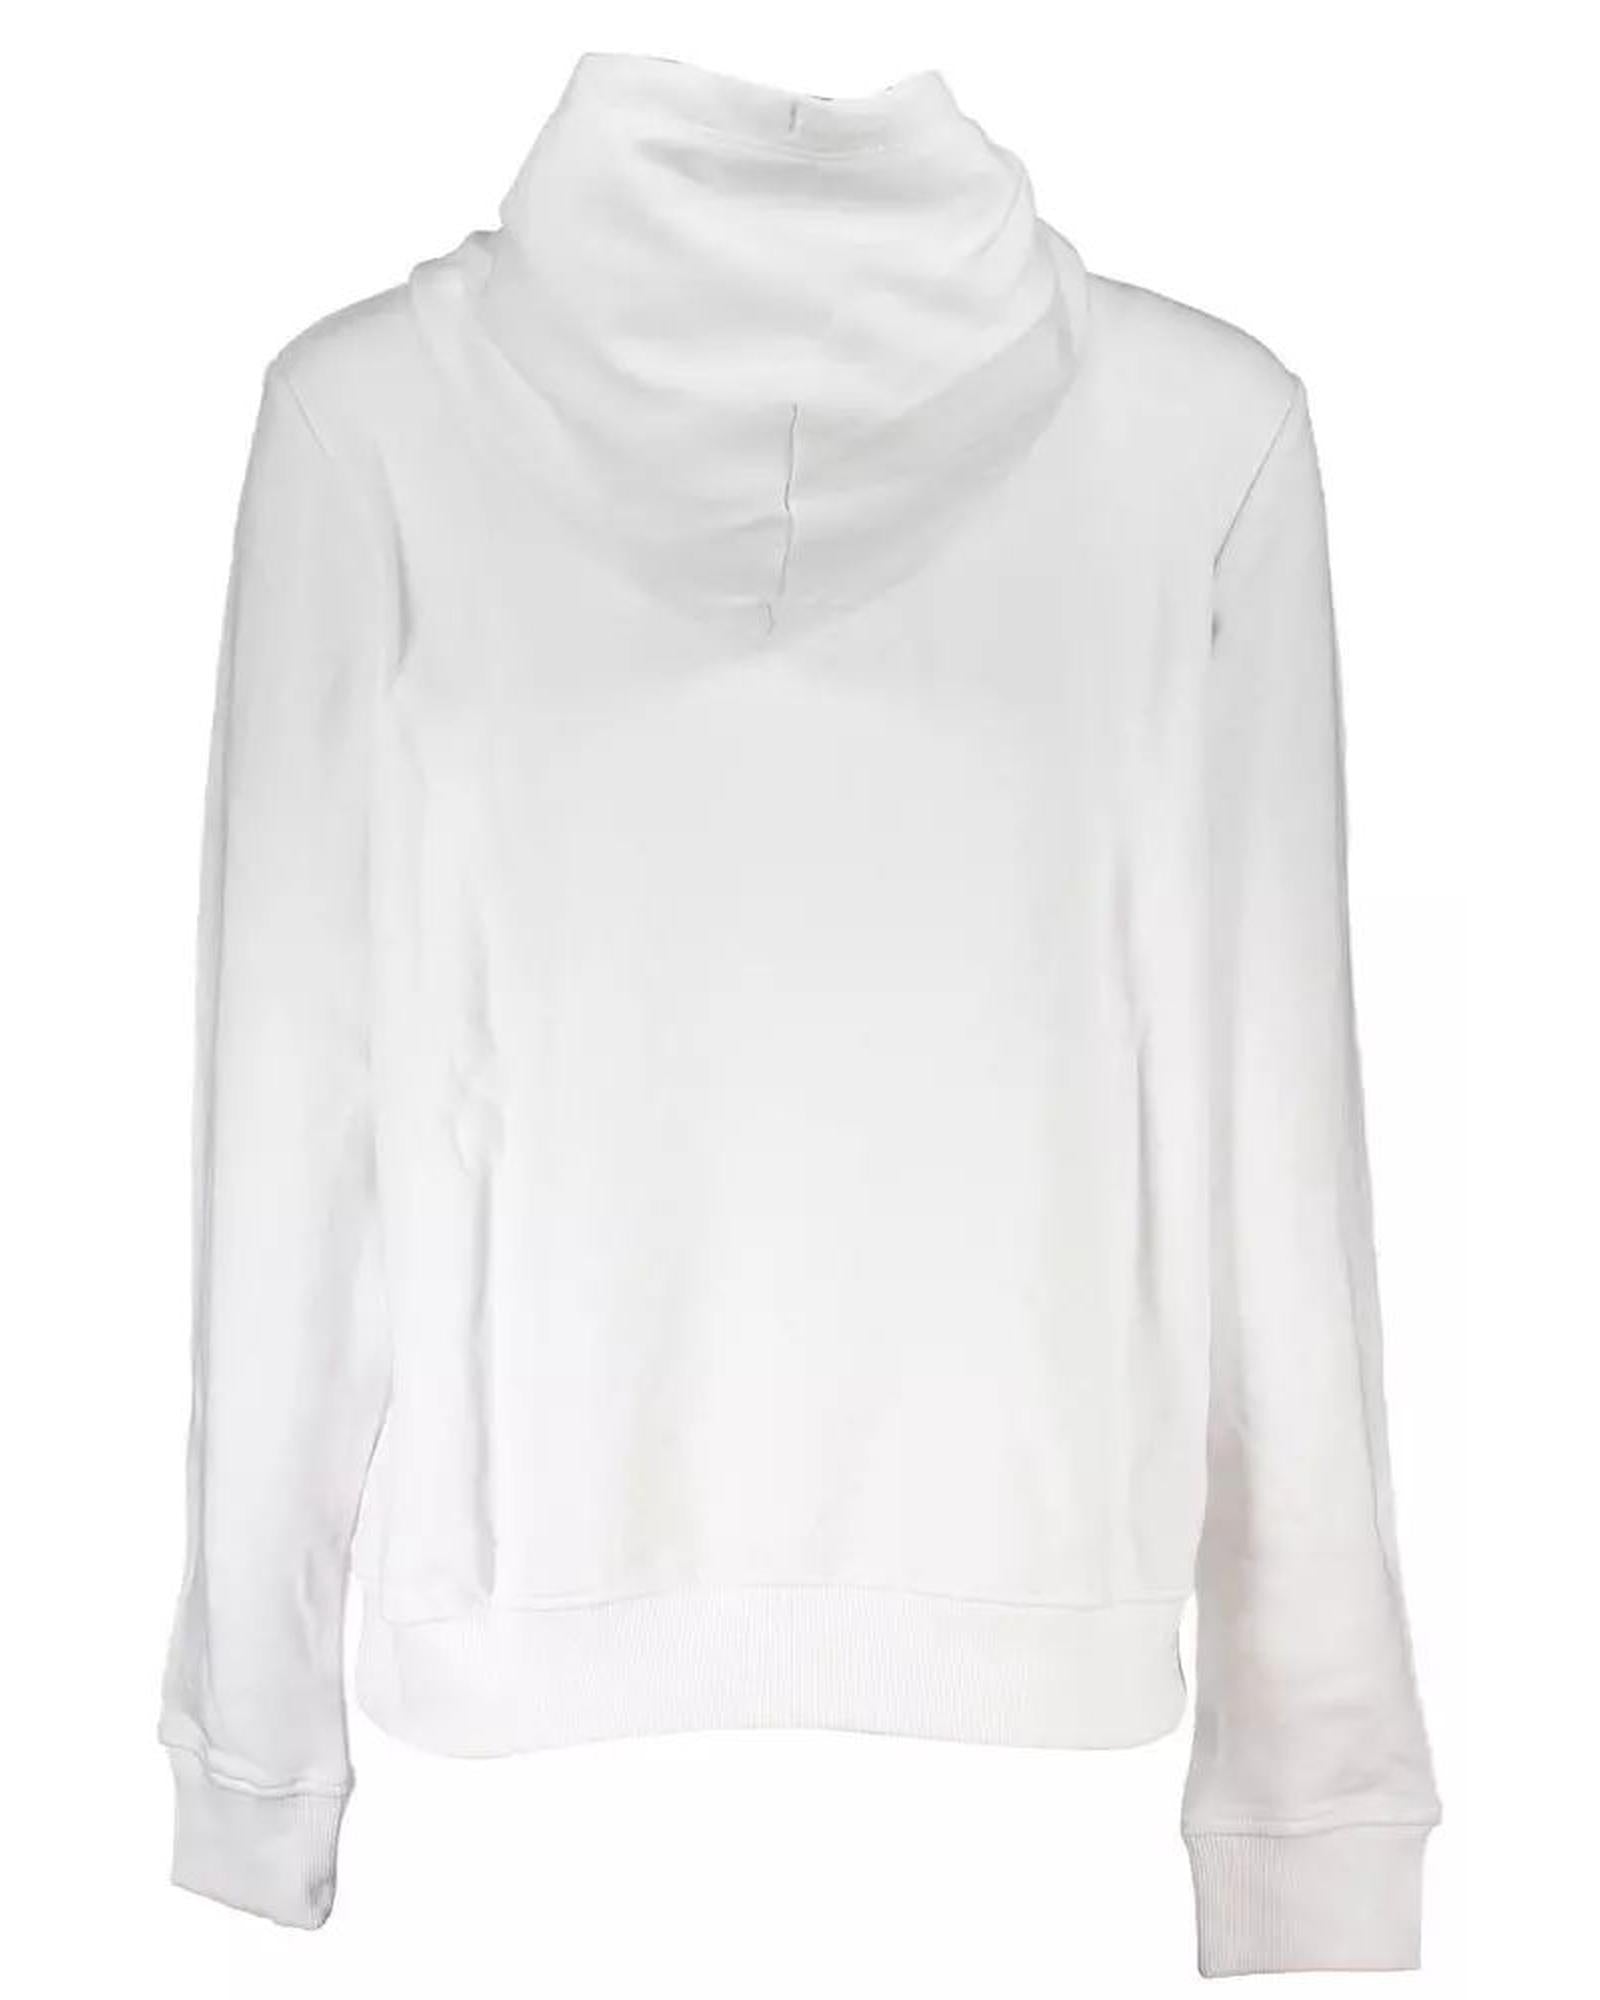 Women's White Cotton Sweater - L